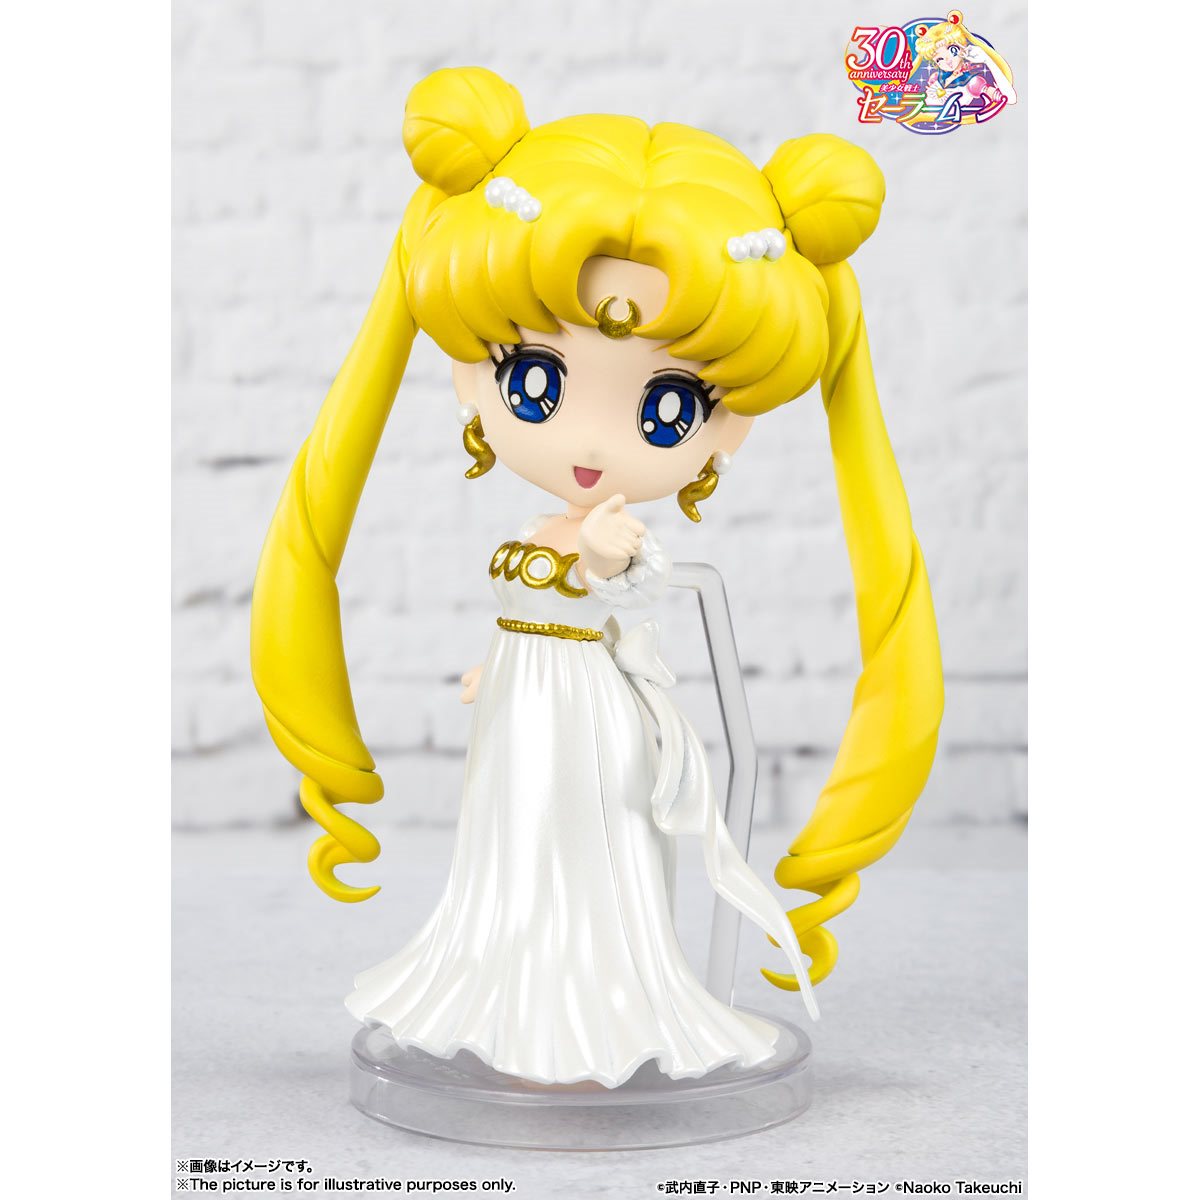 Bandai Tamashii Nations Mini FiguArts: Pretty Guardian Sailor Moon - Princesa Serenity Minifigura